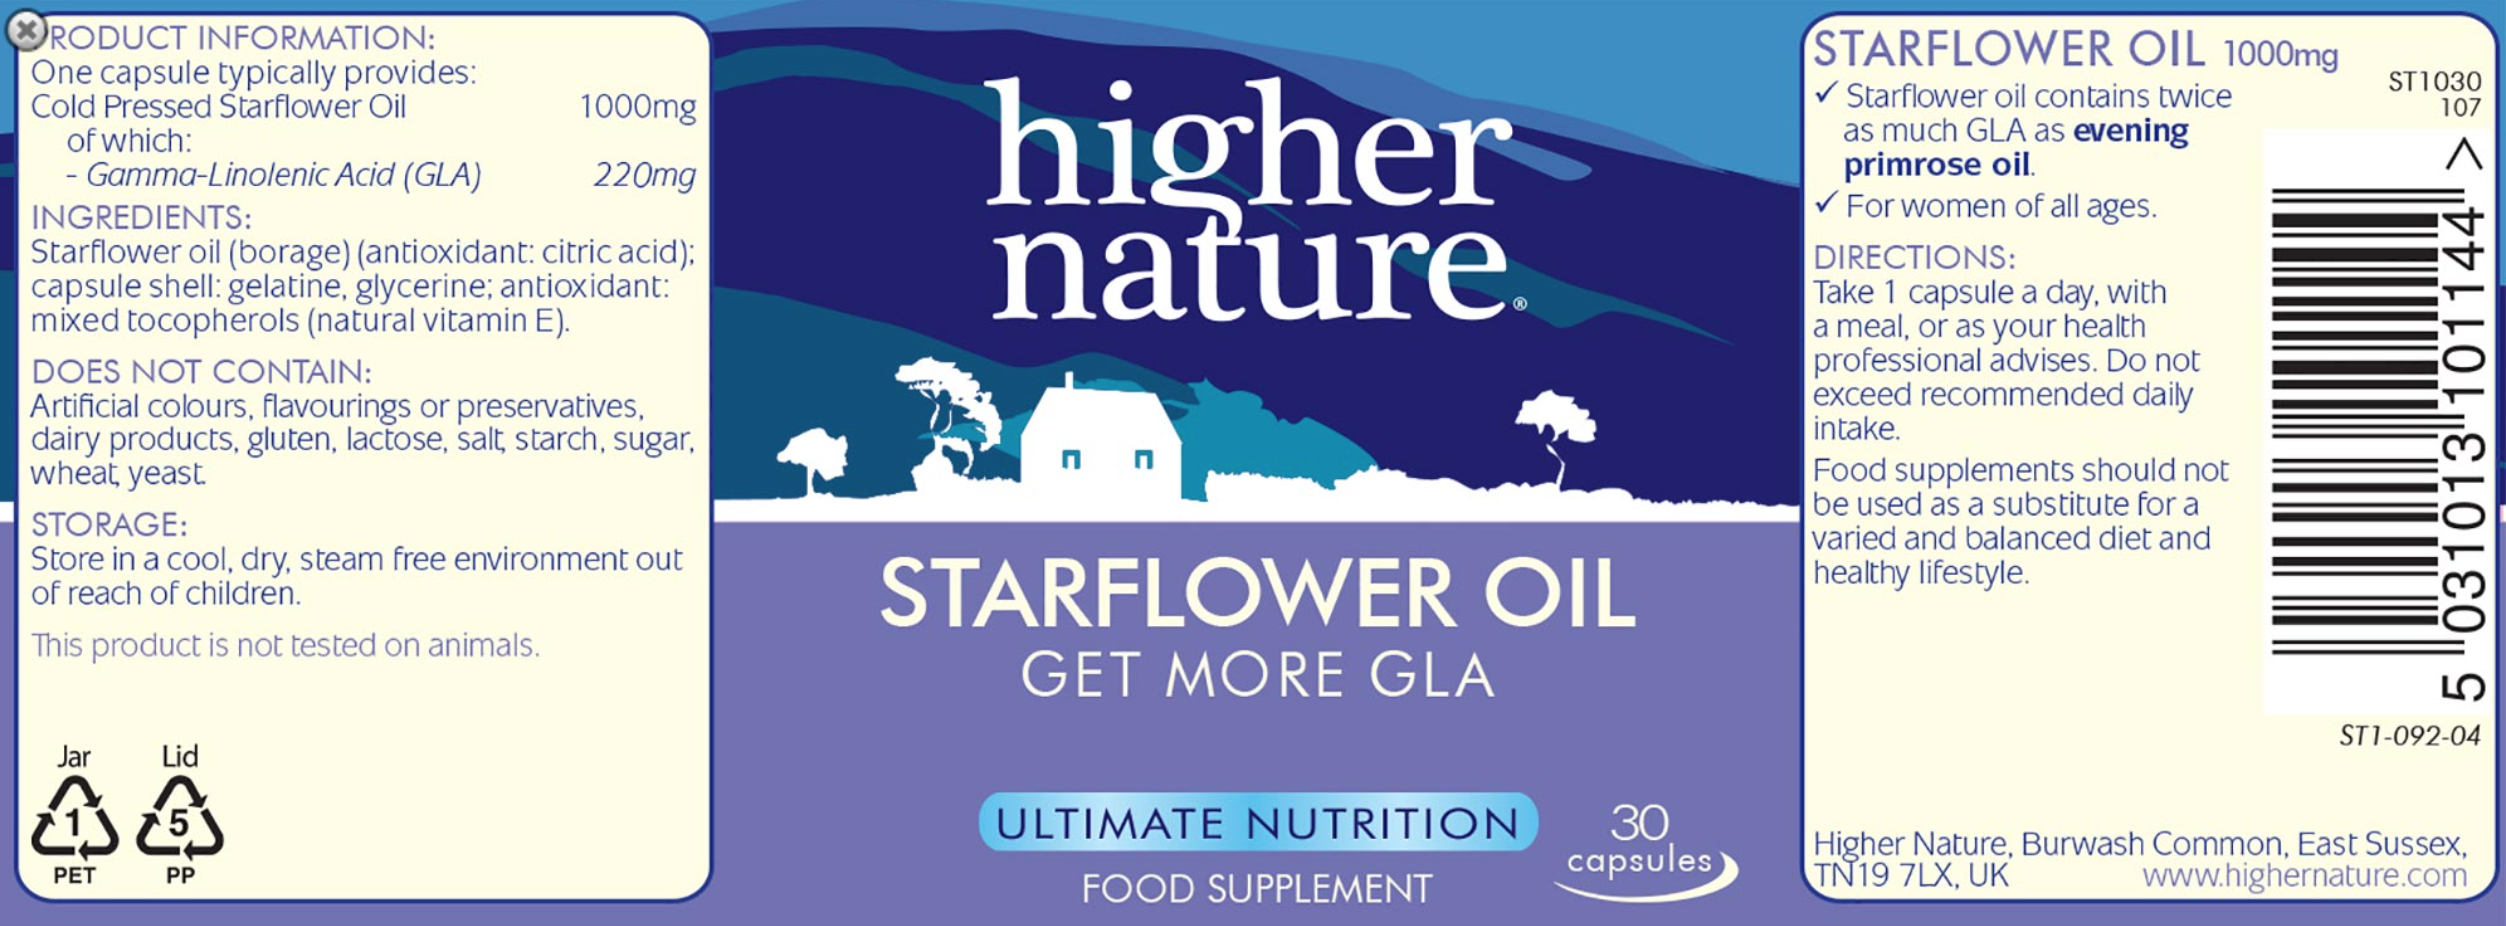 Wechseljahre - Borretschöl - Starflower Oil zu Unterstützung eines gesunden Hormonspiegels